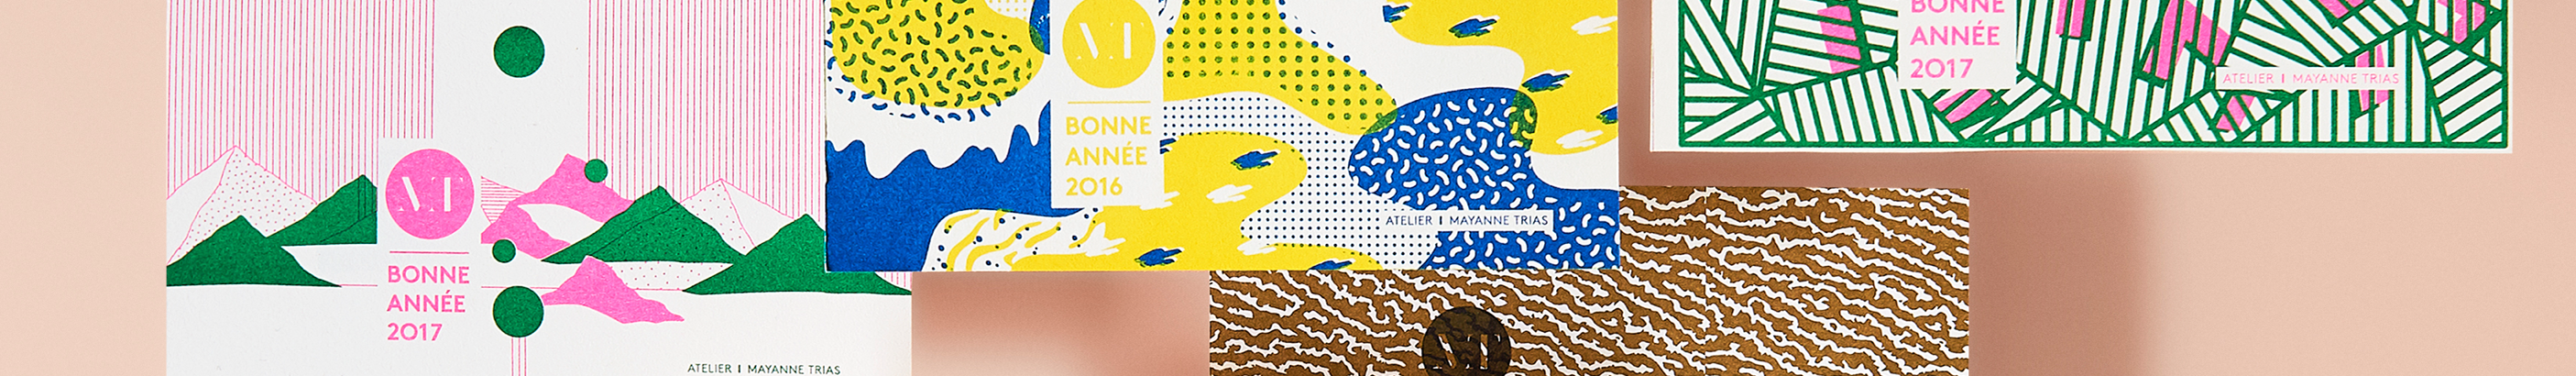 Atelier Graphique Mayanne Trias's profile banner